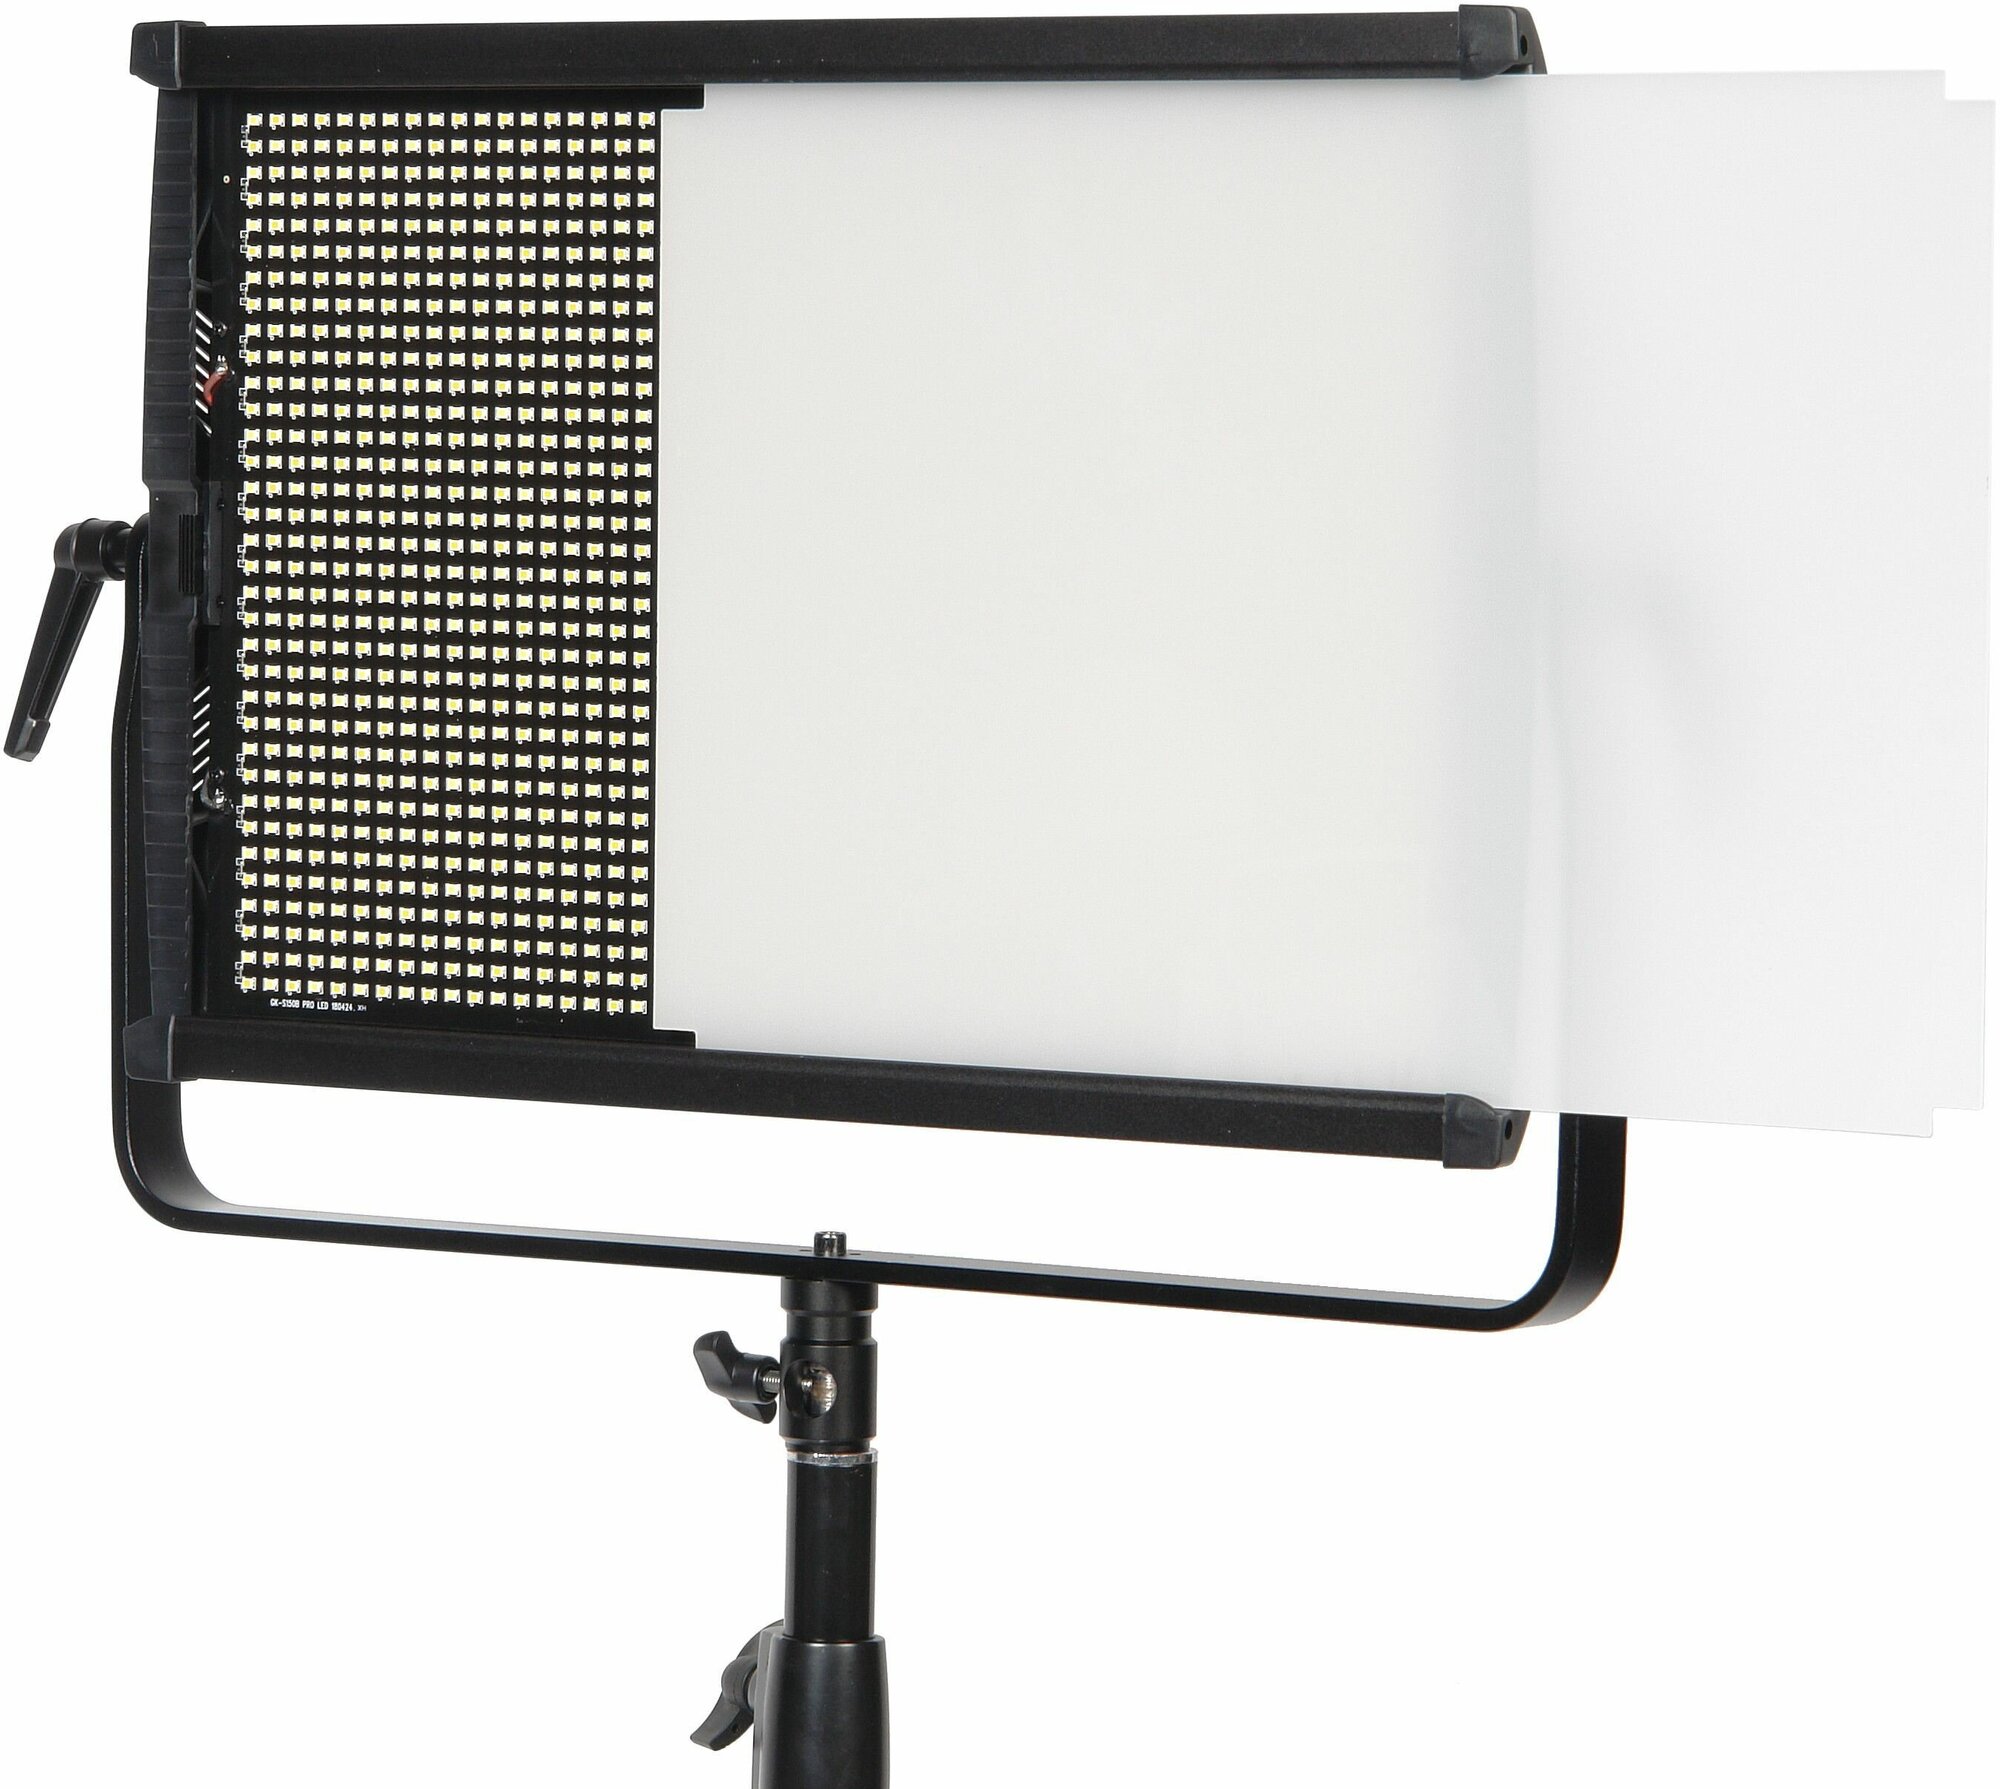 Осветитель светодиодный Falcon Eyes FlatLight 150 LED Bi-color, световая панель для фото и видео съемки, видеосвет